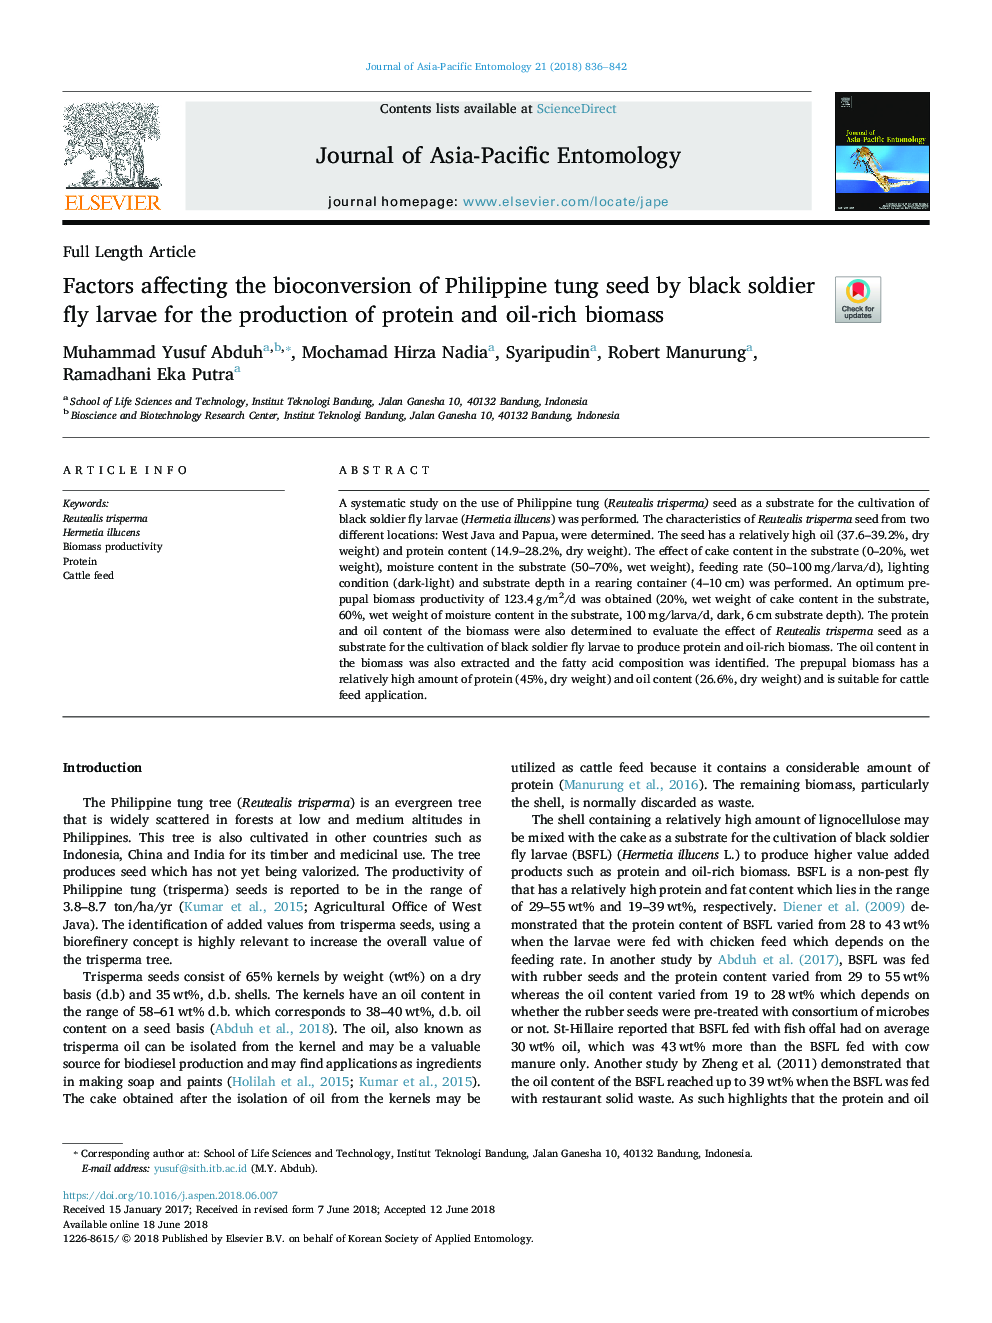 عوامل موثر بر تبدیل بیولوژیکی دانه تونگ فیلیپین توسط لاروهای پرواز سرباز سیاه پوست برای تولید پروتئین و زیست توده غنی از 